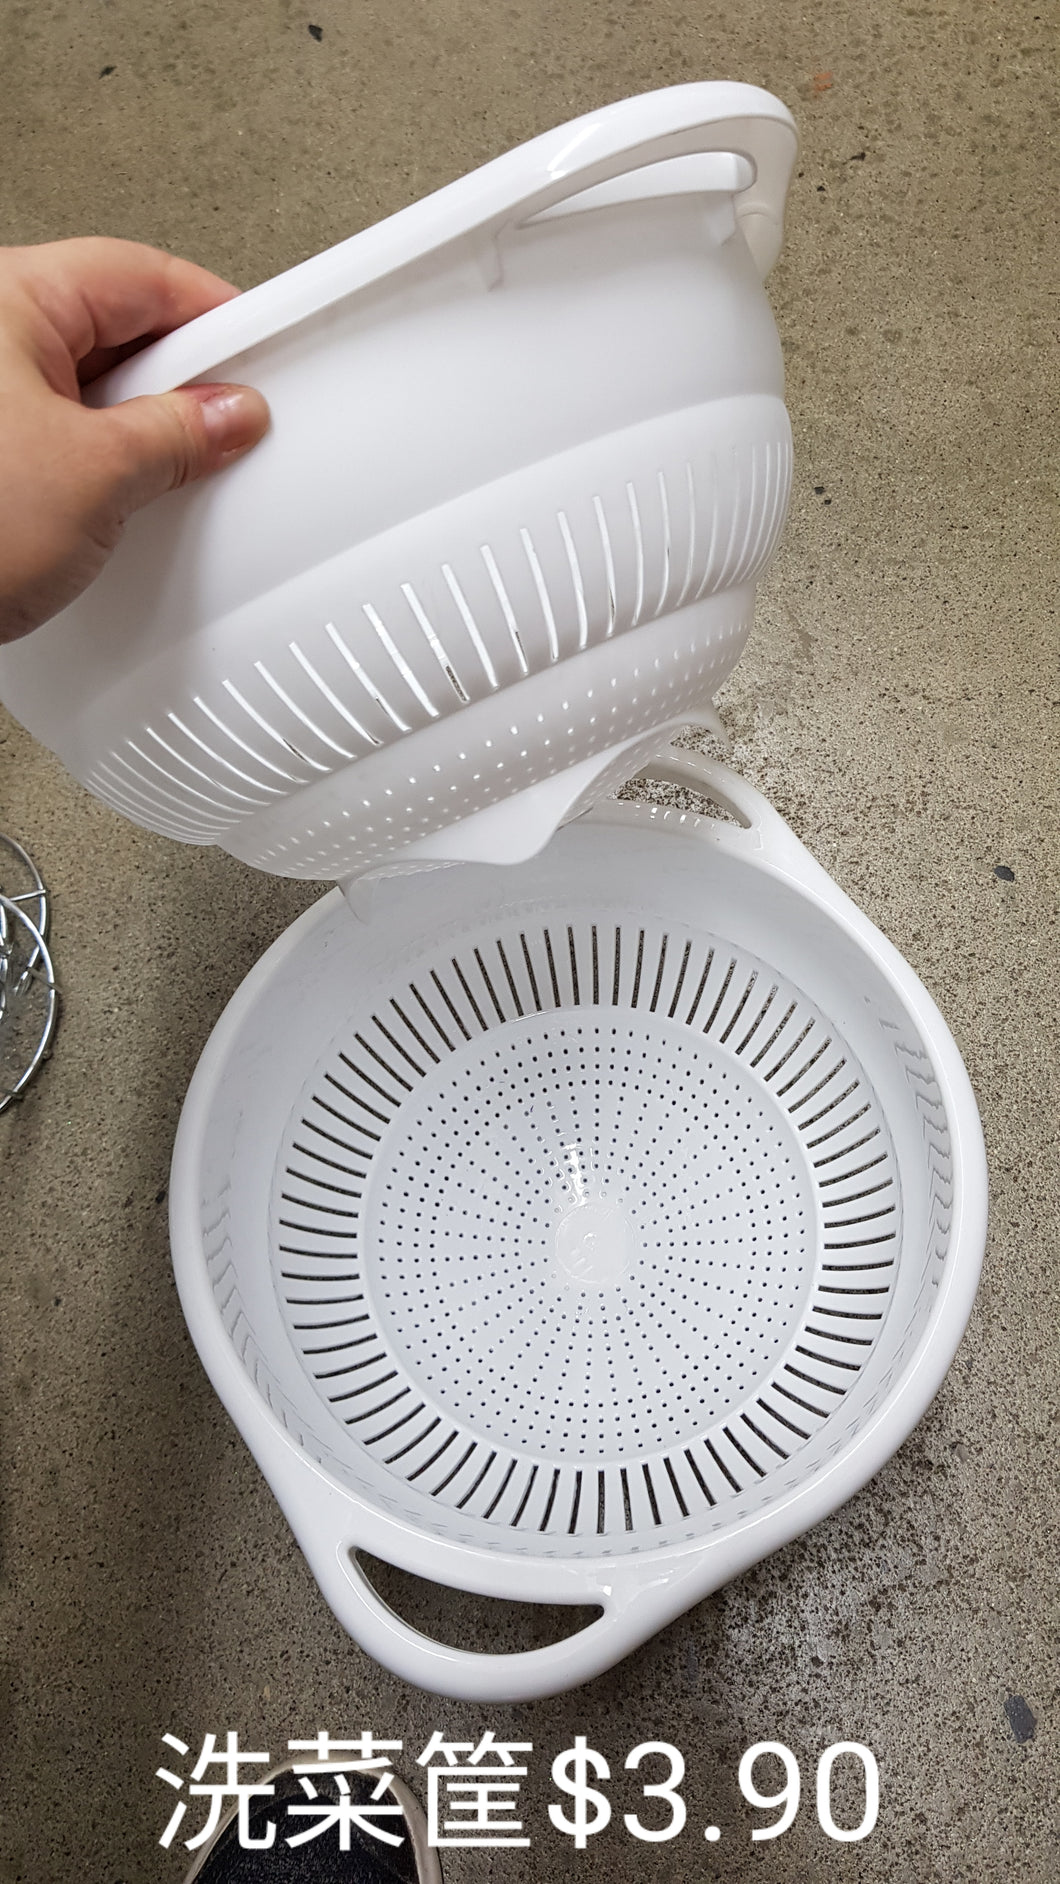 Vagetable washing basket white